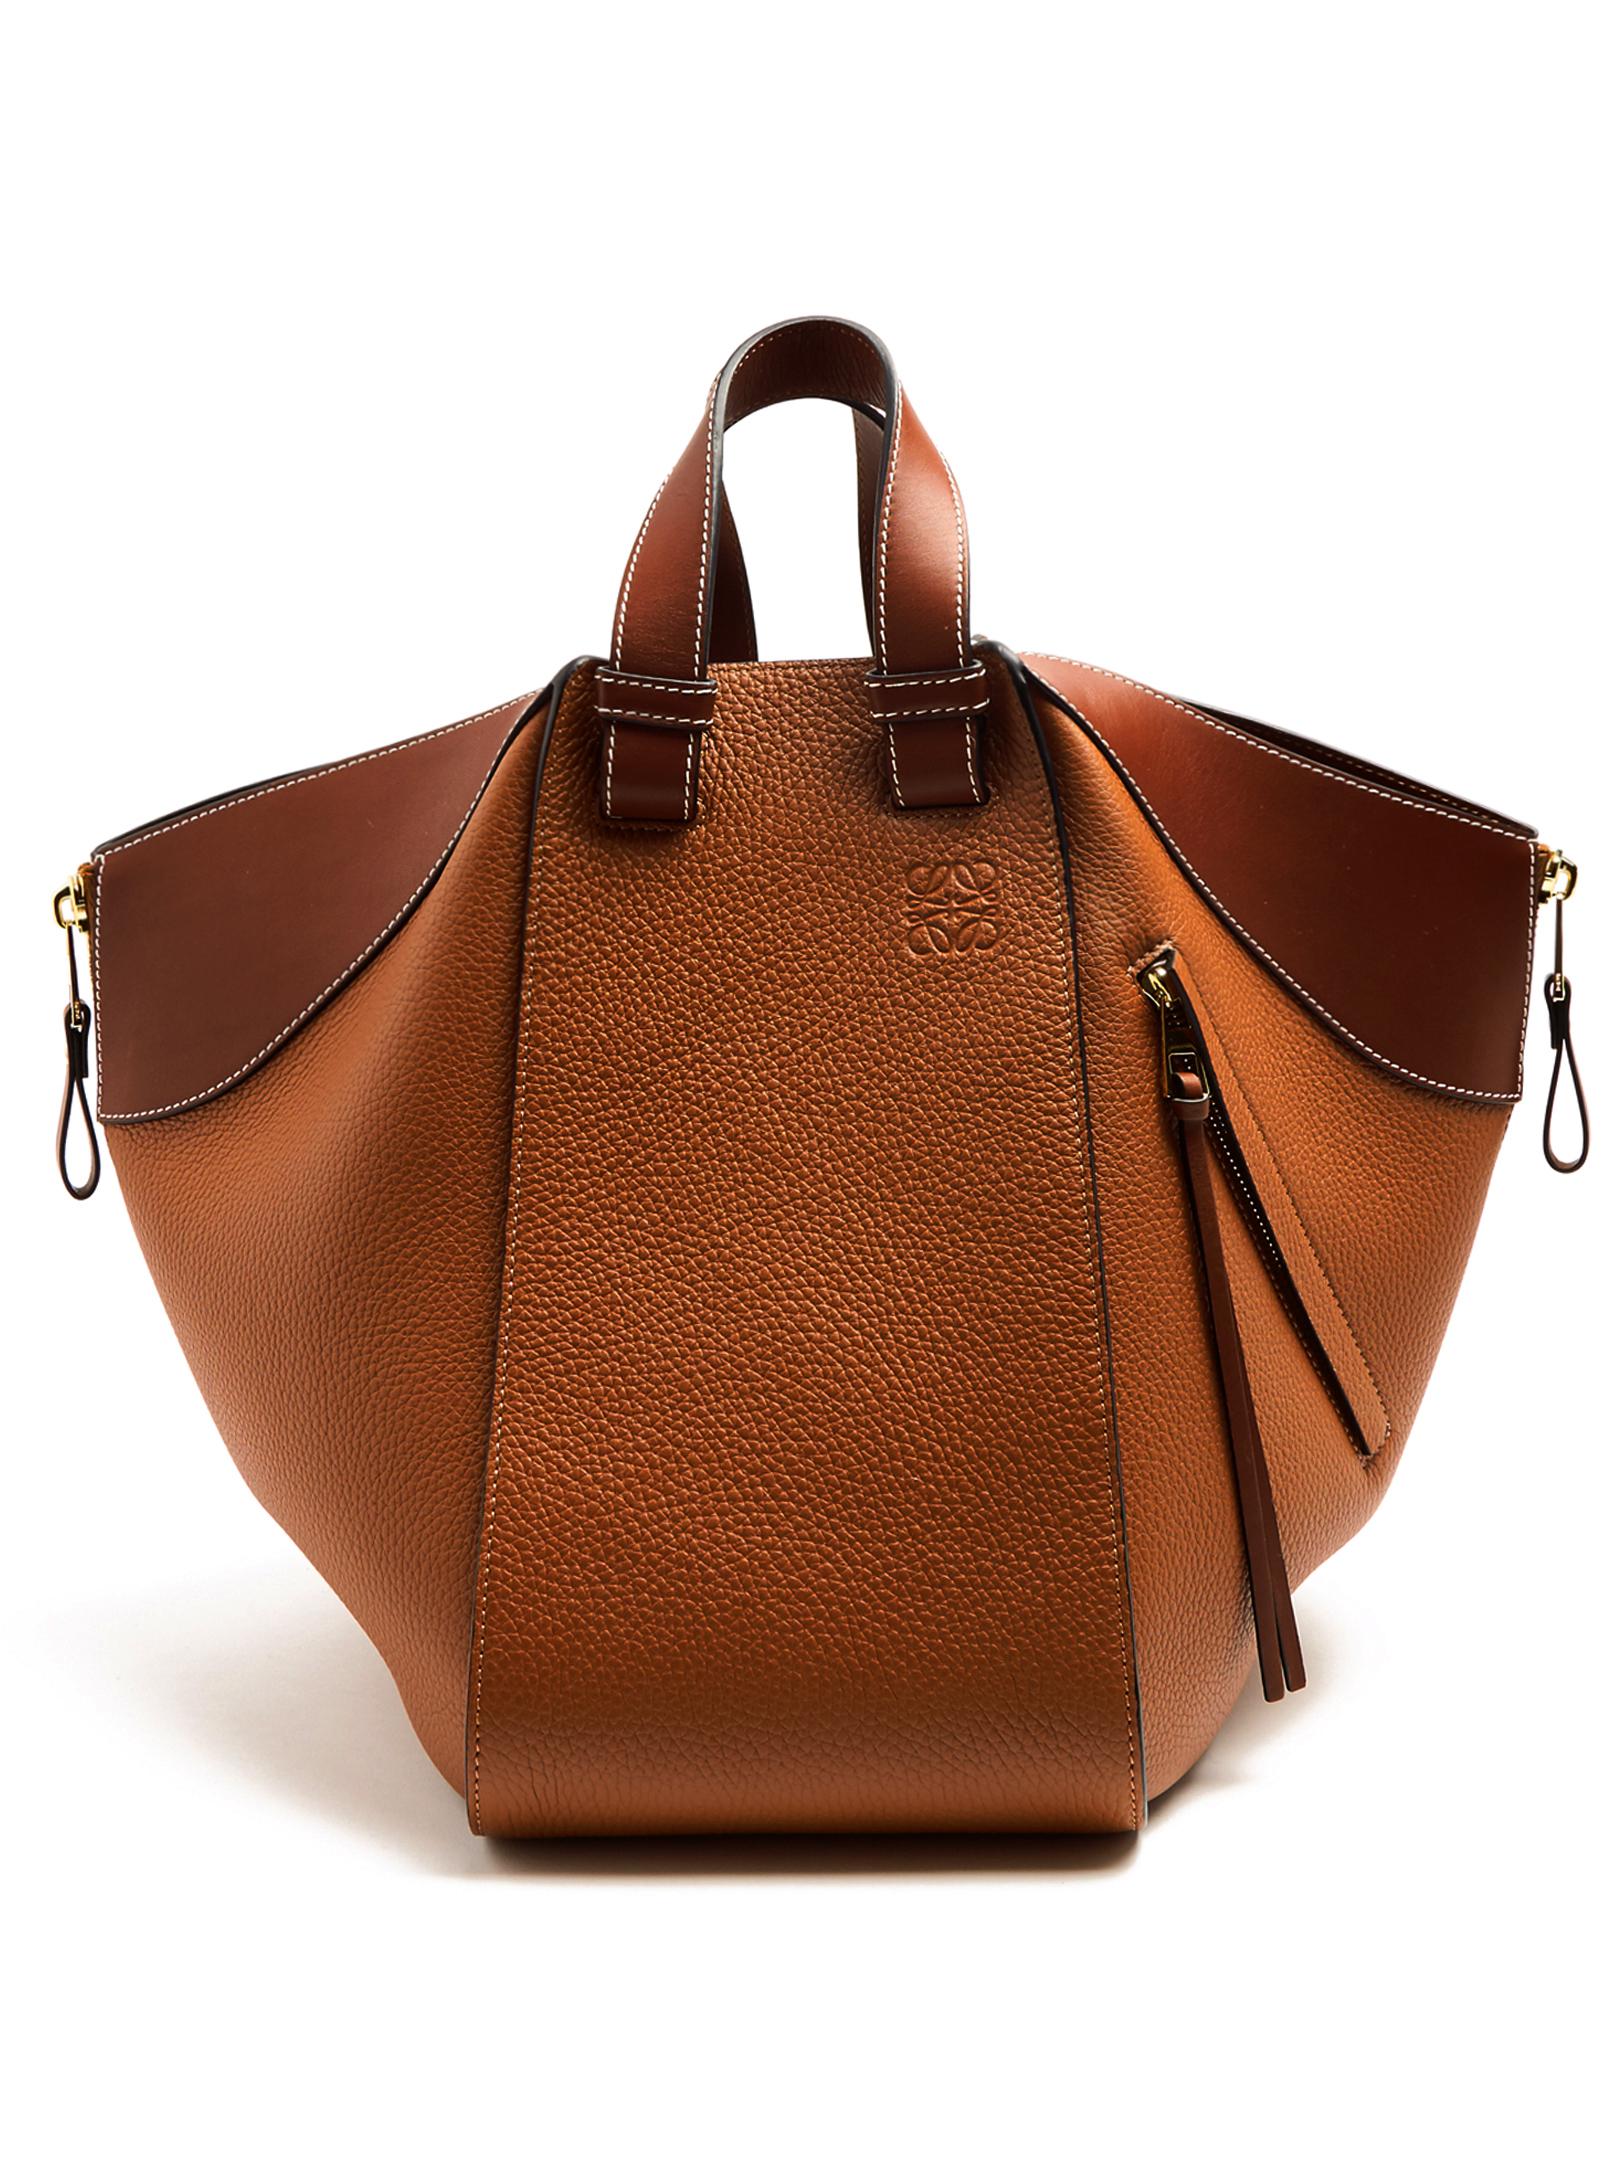 Lyst - Loewe Hammock Large Grained-leather Tote Bag in Brown